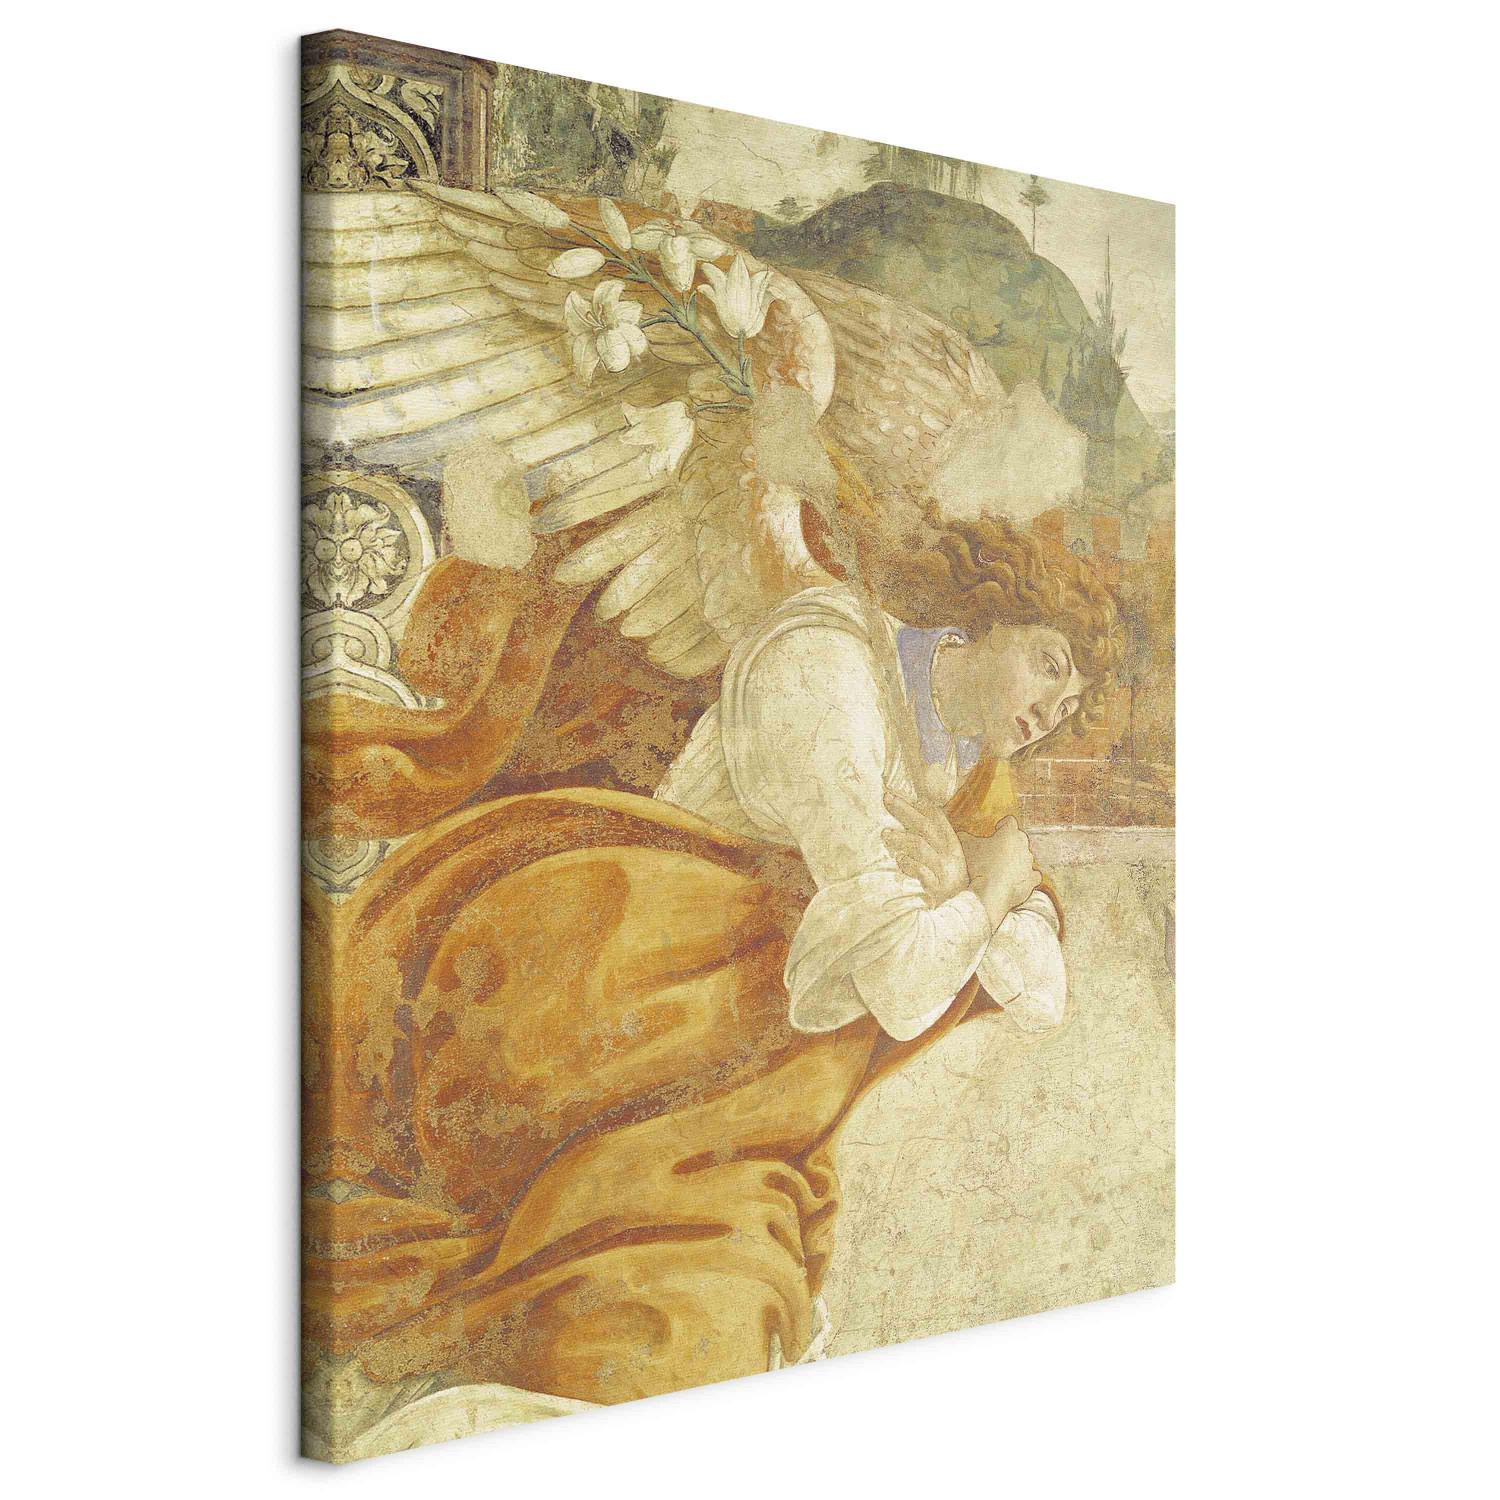 Reproducción de cuadro The Annunciation, detail of the Archangel Gabriel, from San Martino della Scala